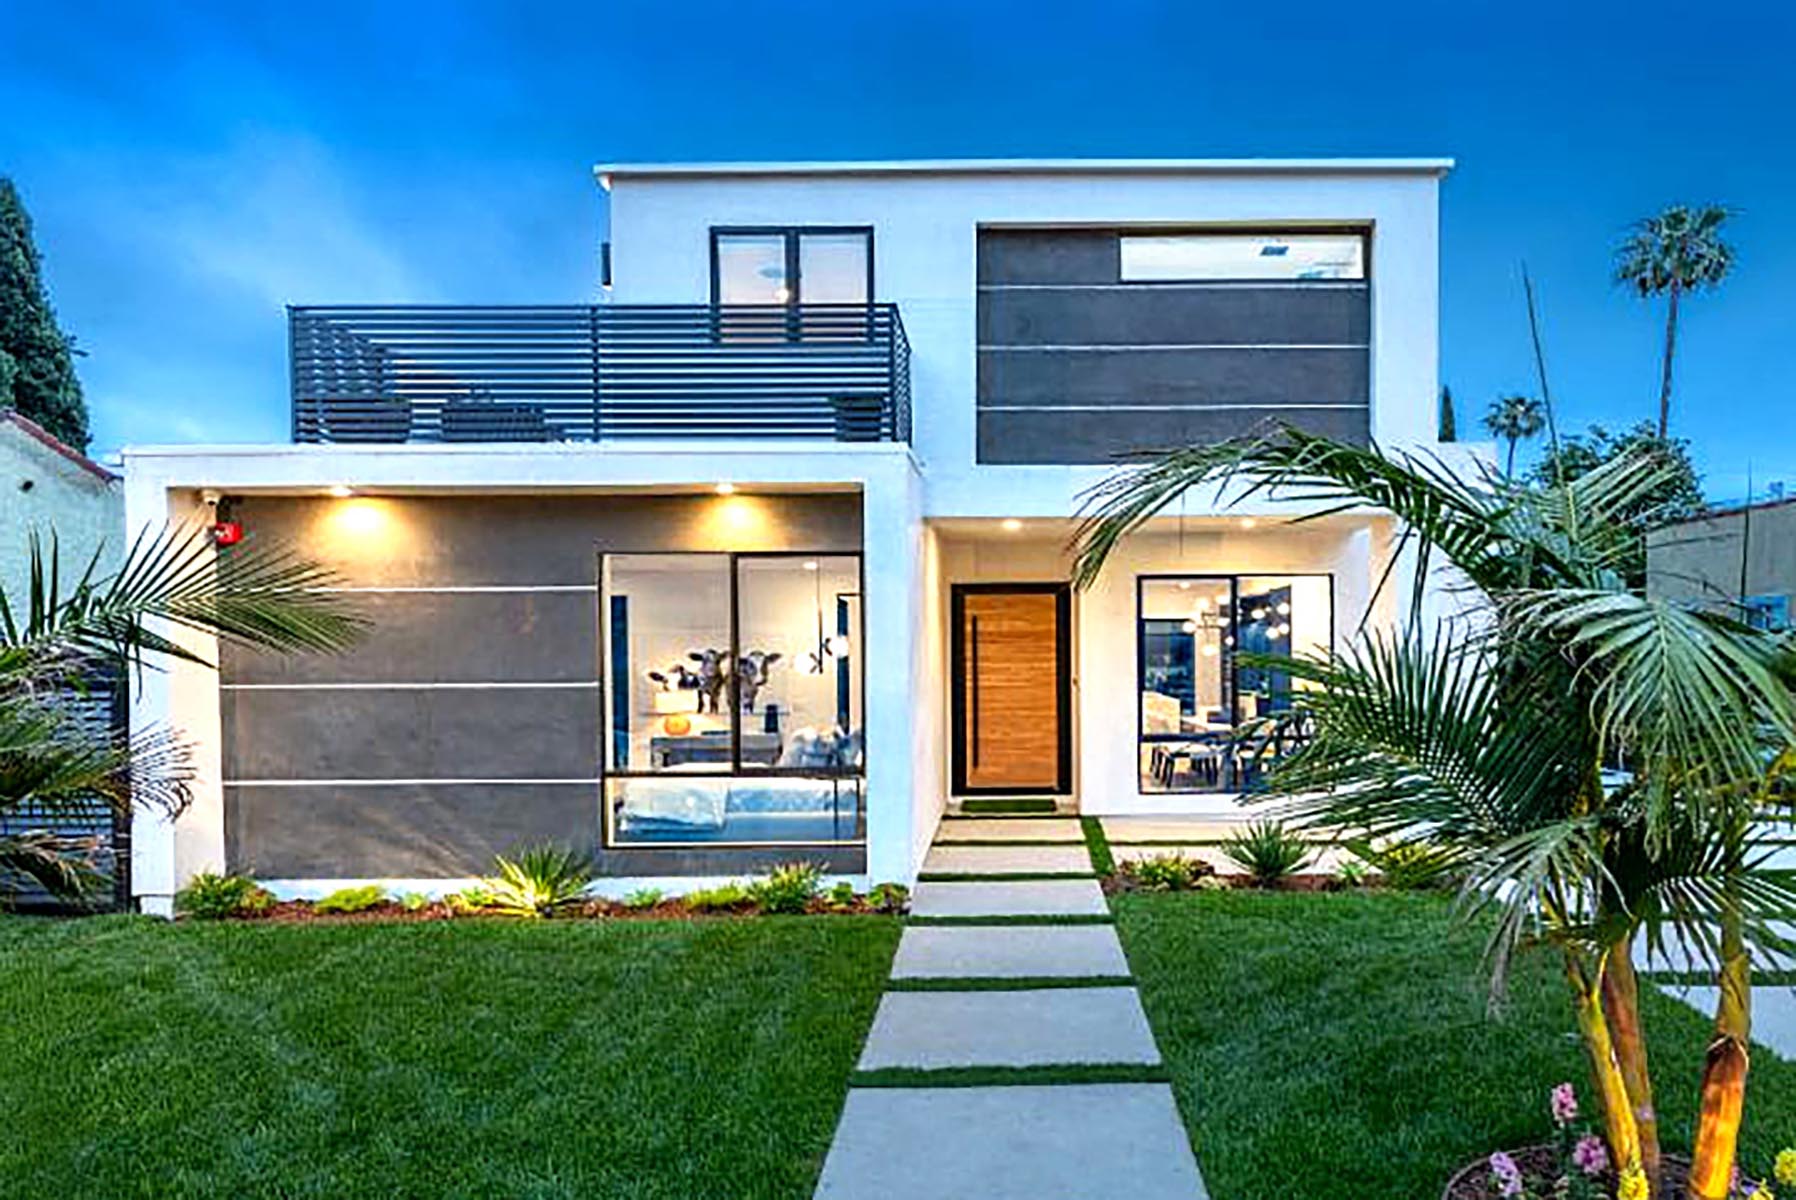 Home design Los Angeles modern contemporary exterior 4